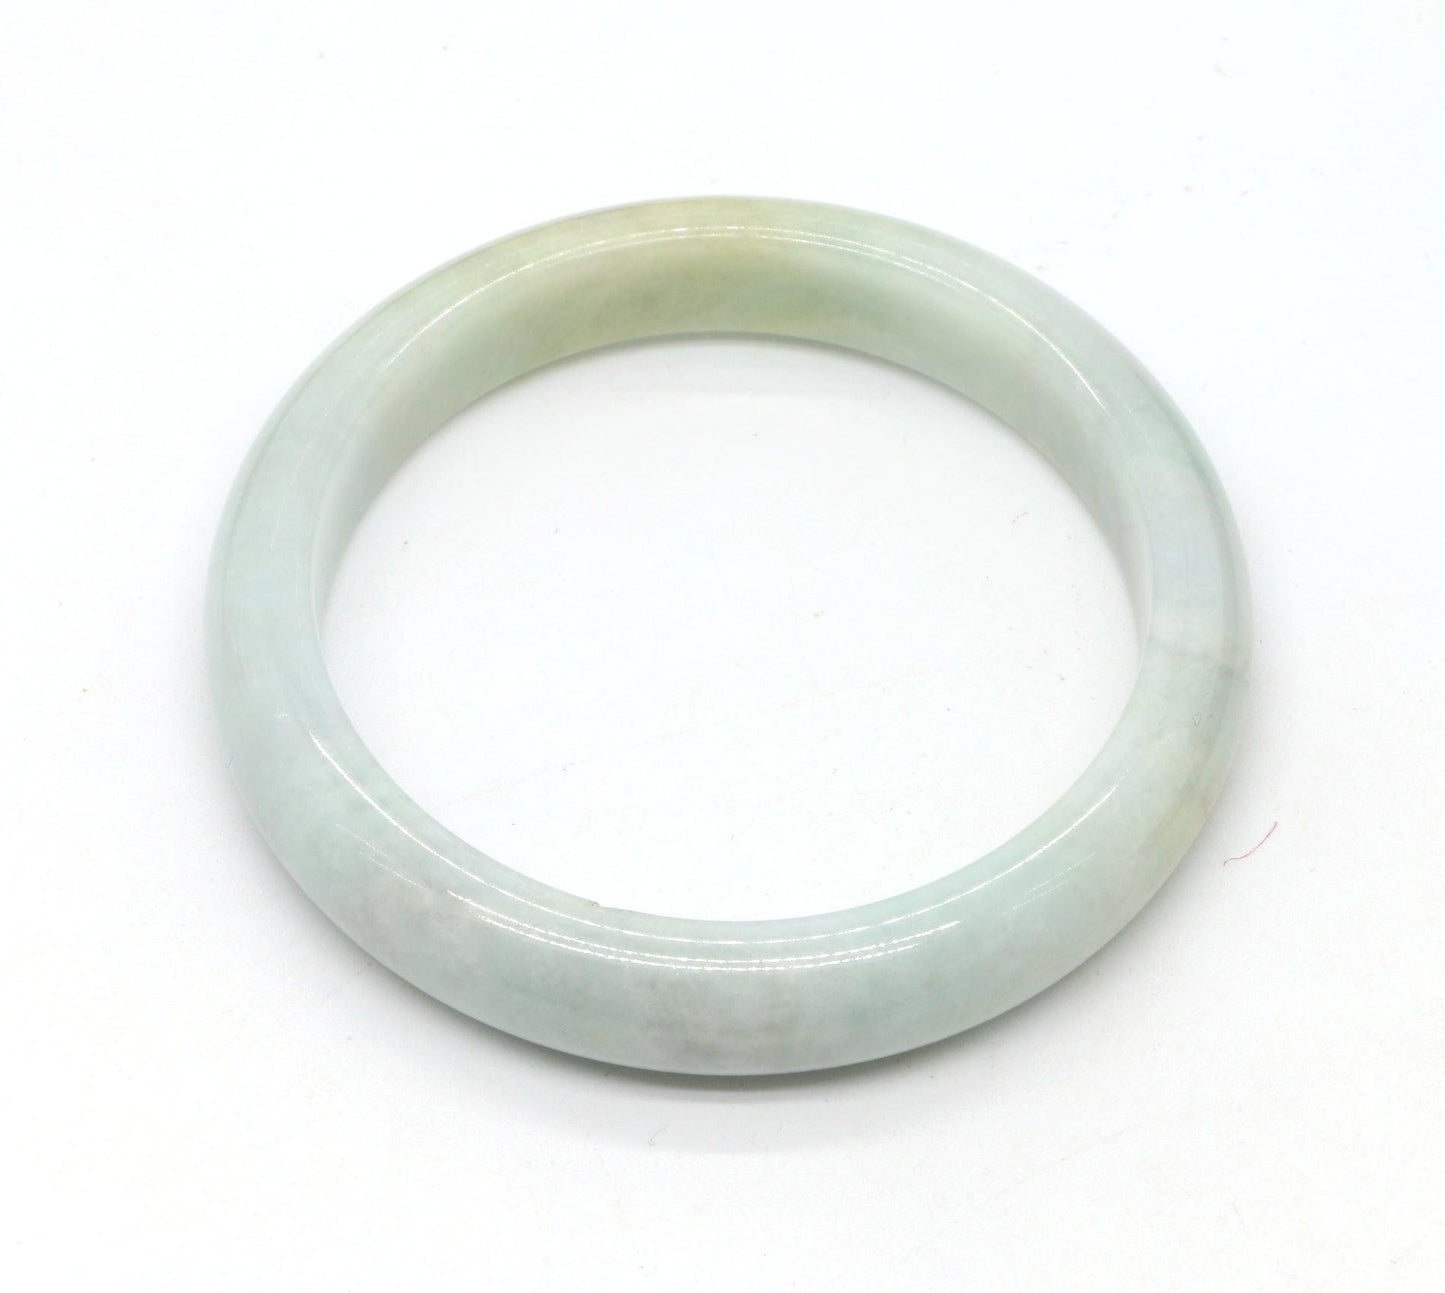 Type A Certified Jadeite Jade Bangle Size 56 -58mm B0BNFPRNN2